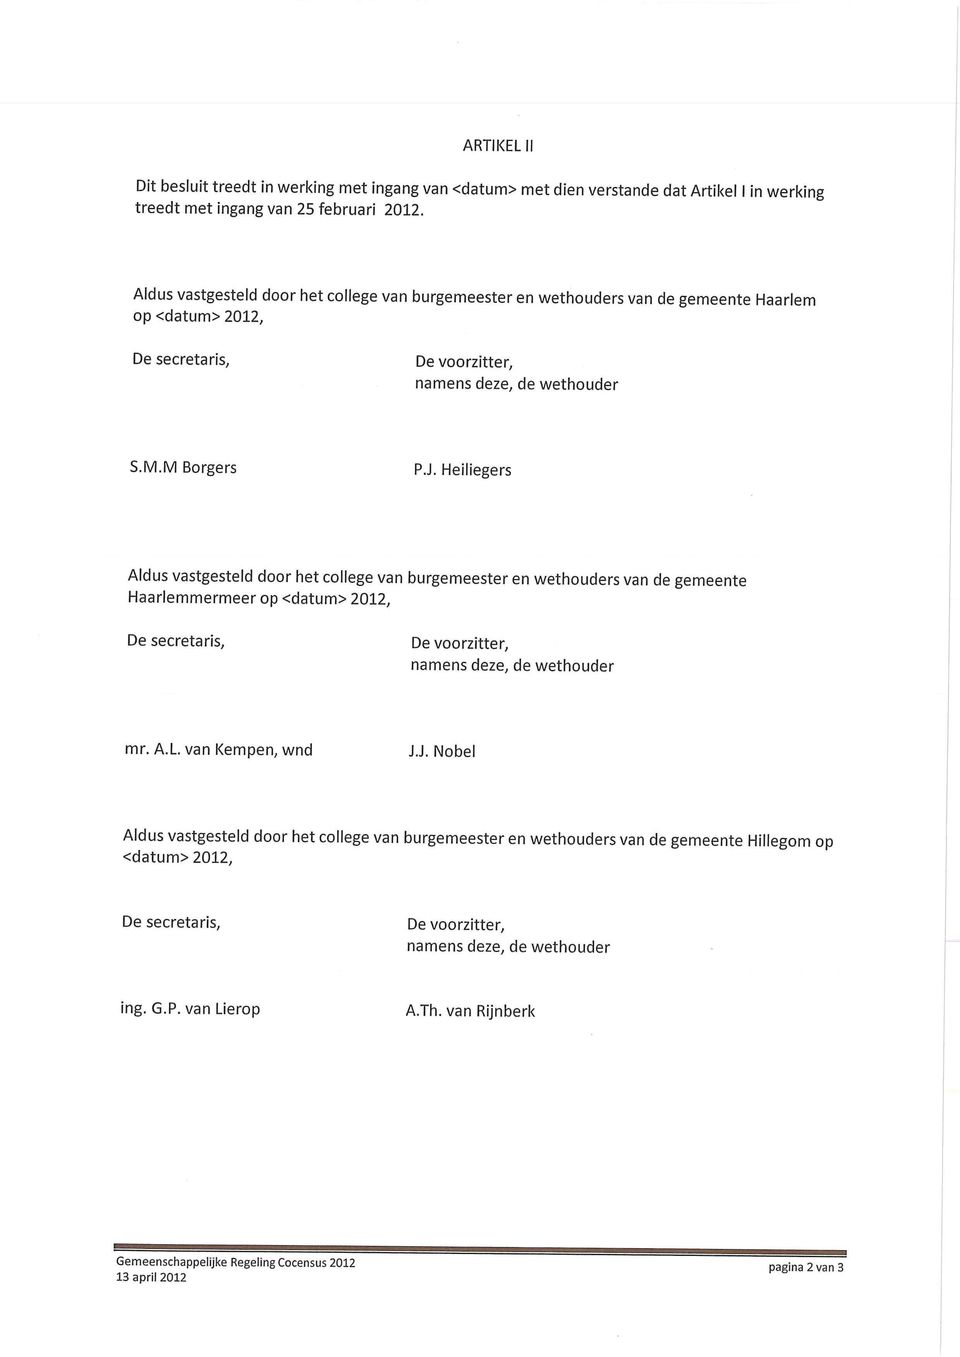 Heiliegers Aldus vastgesteld door het college van burgemeester en wethouders van de gemeente Haarlemmermeer op <datum> 2012, mr. A.L. van Kempen, wnd J.